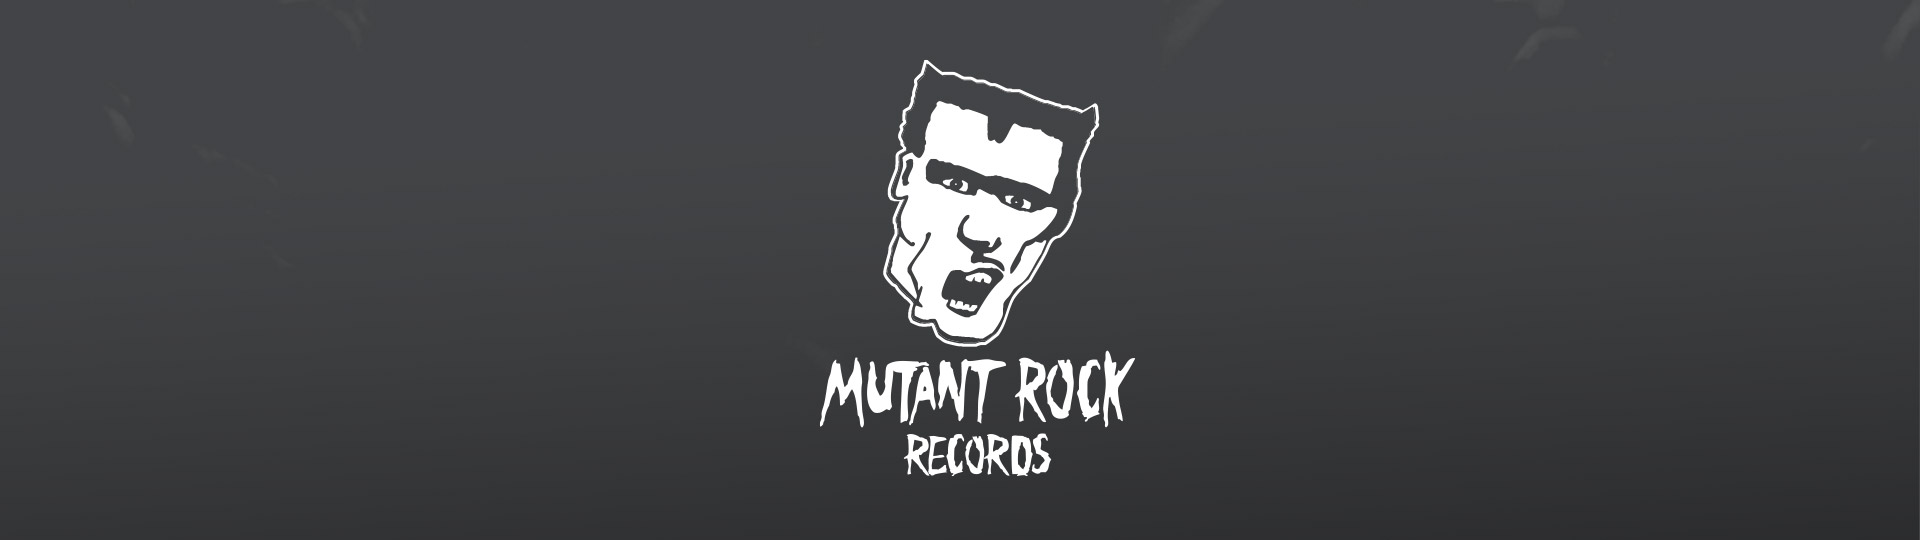 Mutant Rock Records at OUT OF VOGUE SHOP / DE